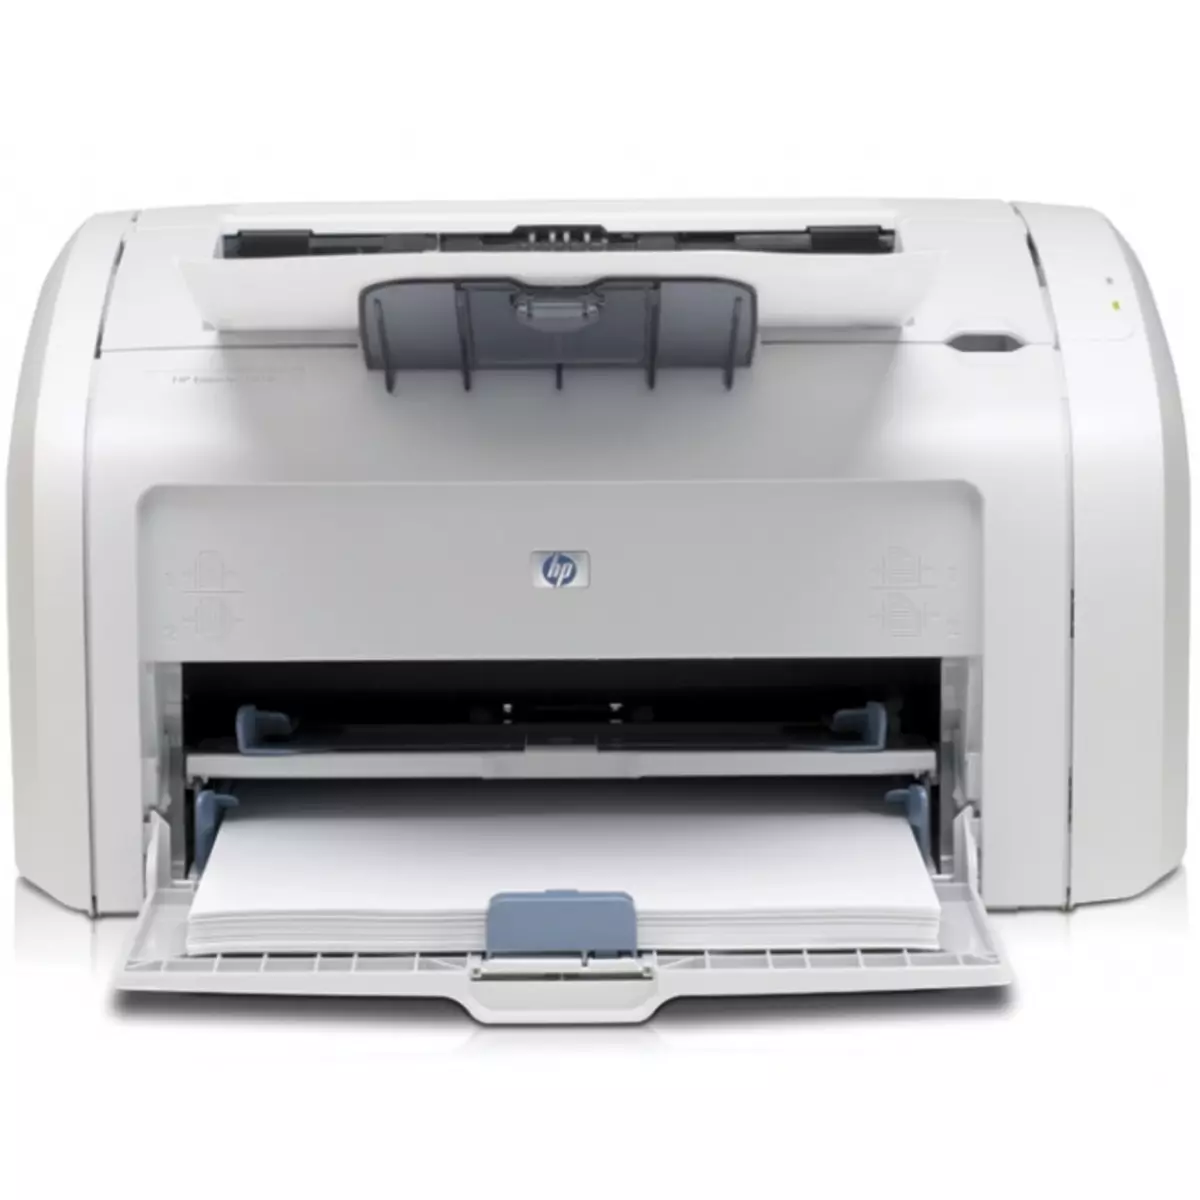 Fametrahana ny HP Laserjet 1018 Printer